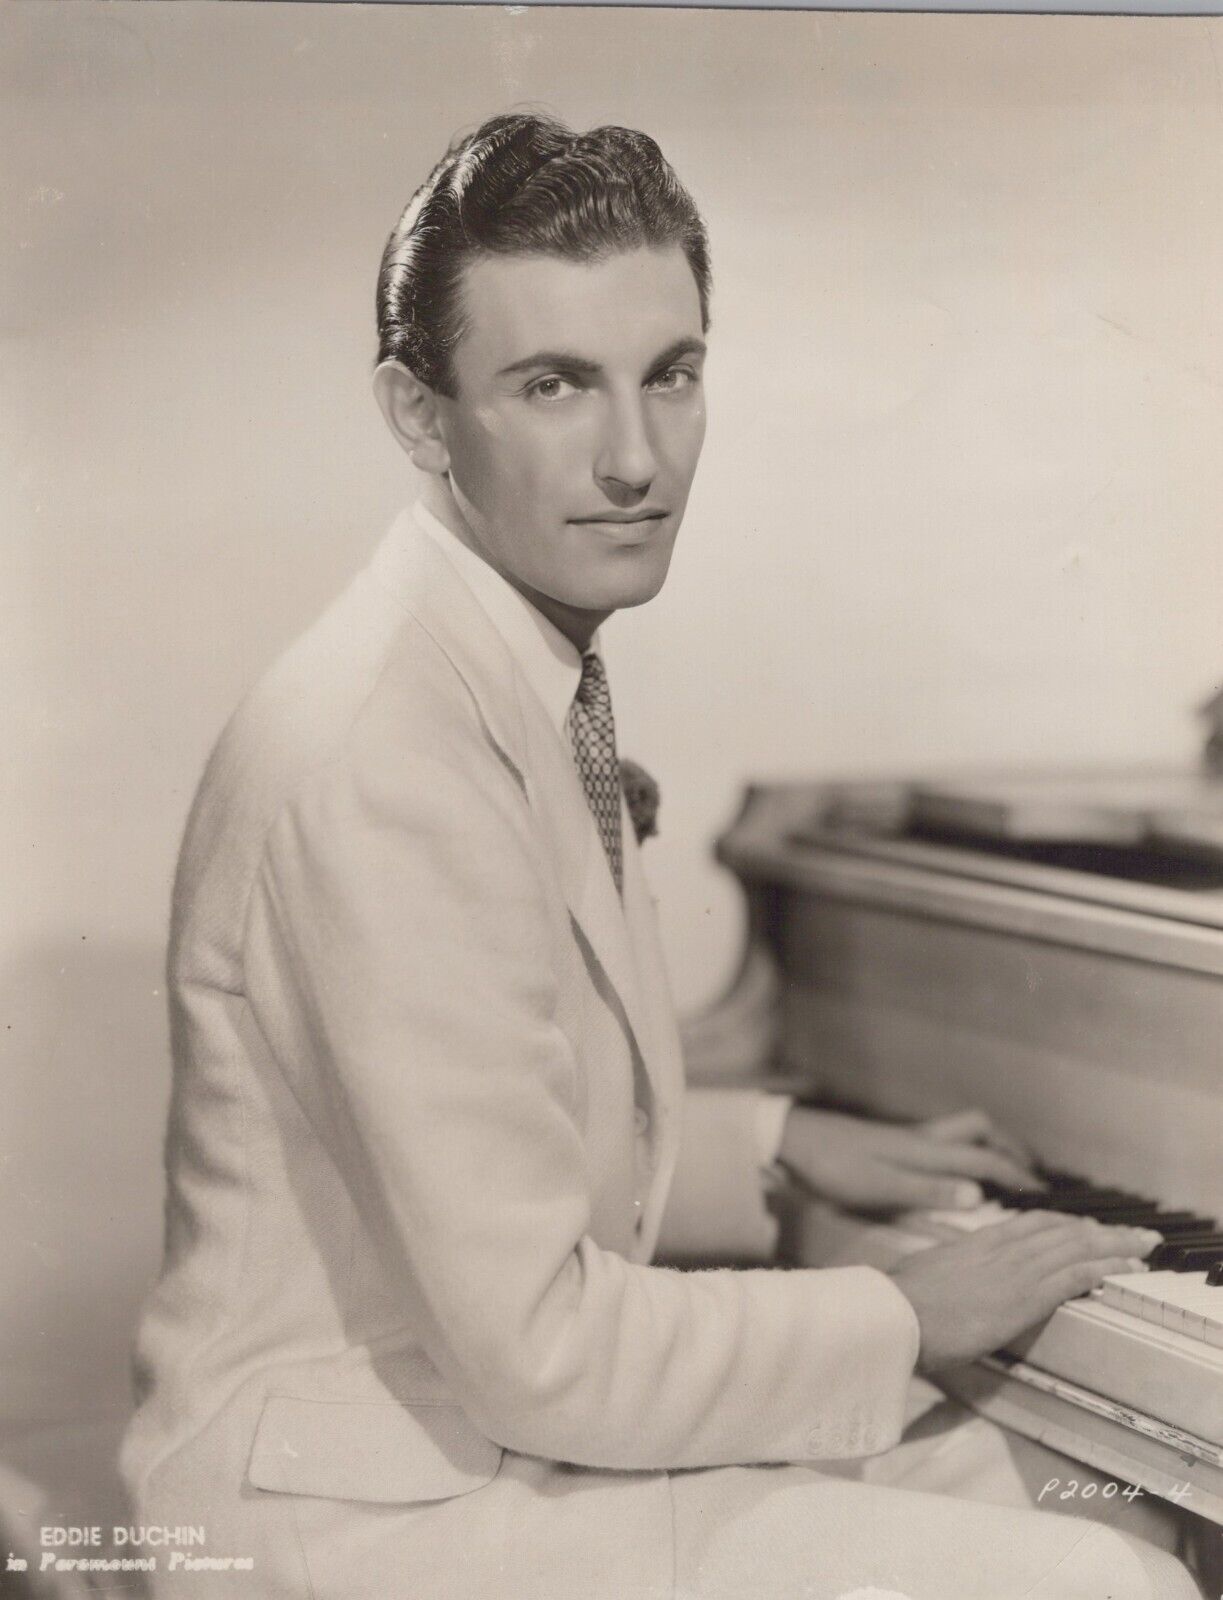 Eddy Duchin (1930s) ❤🎬 Handsome Original Vintage Paramount Photo K 211